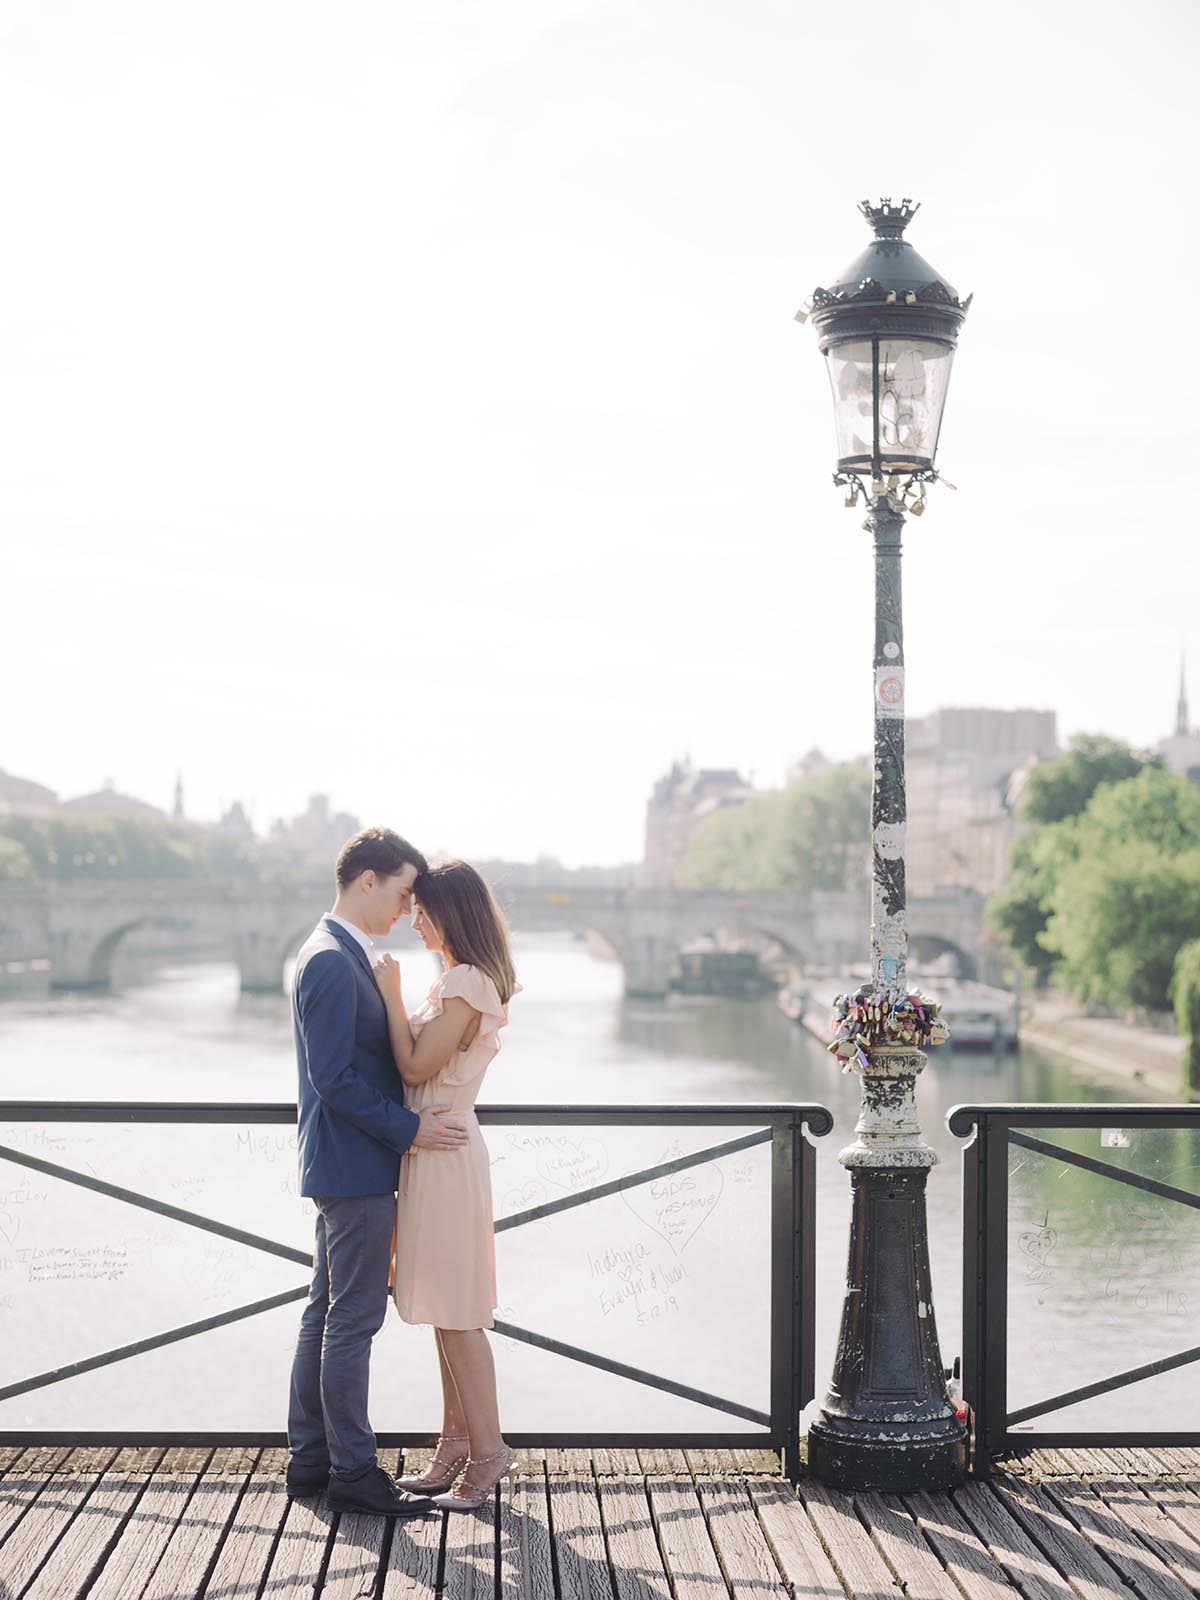 deux personnes s'embrassent sur le pont de bir hakeim